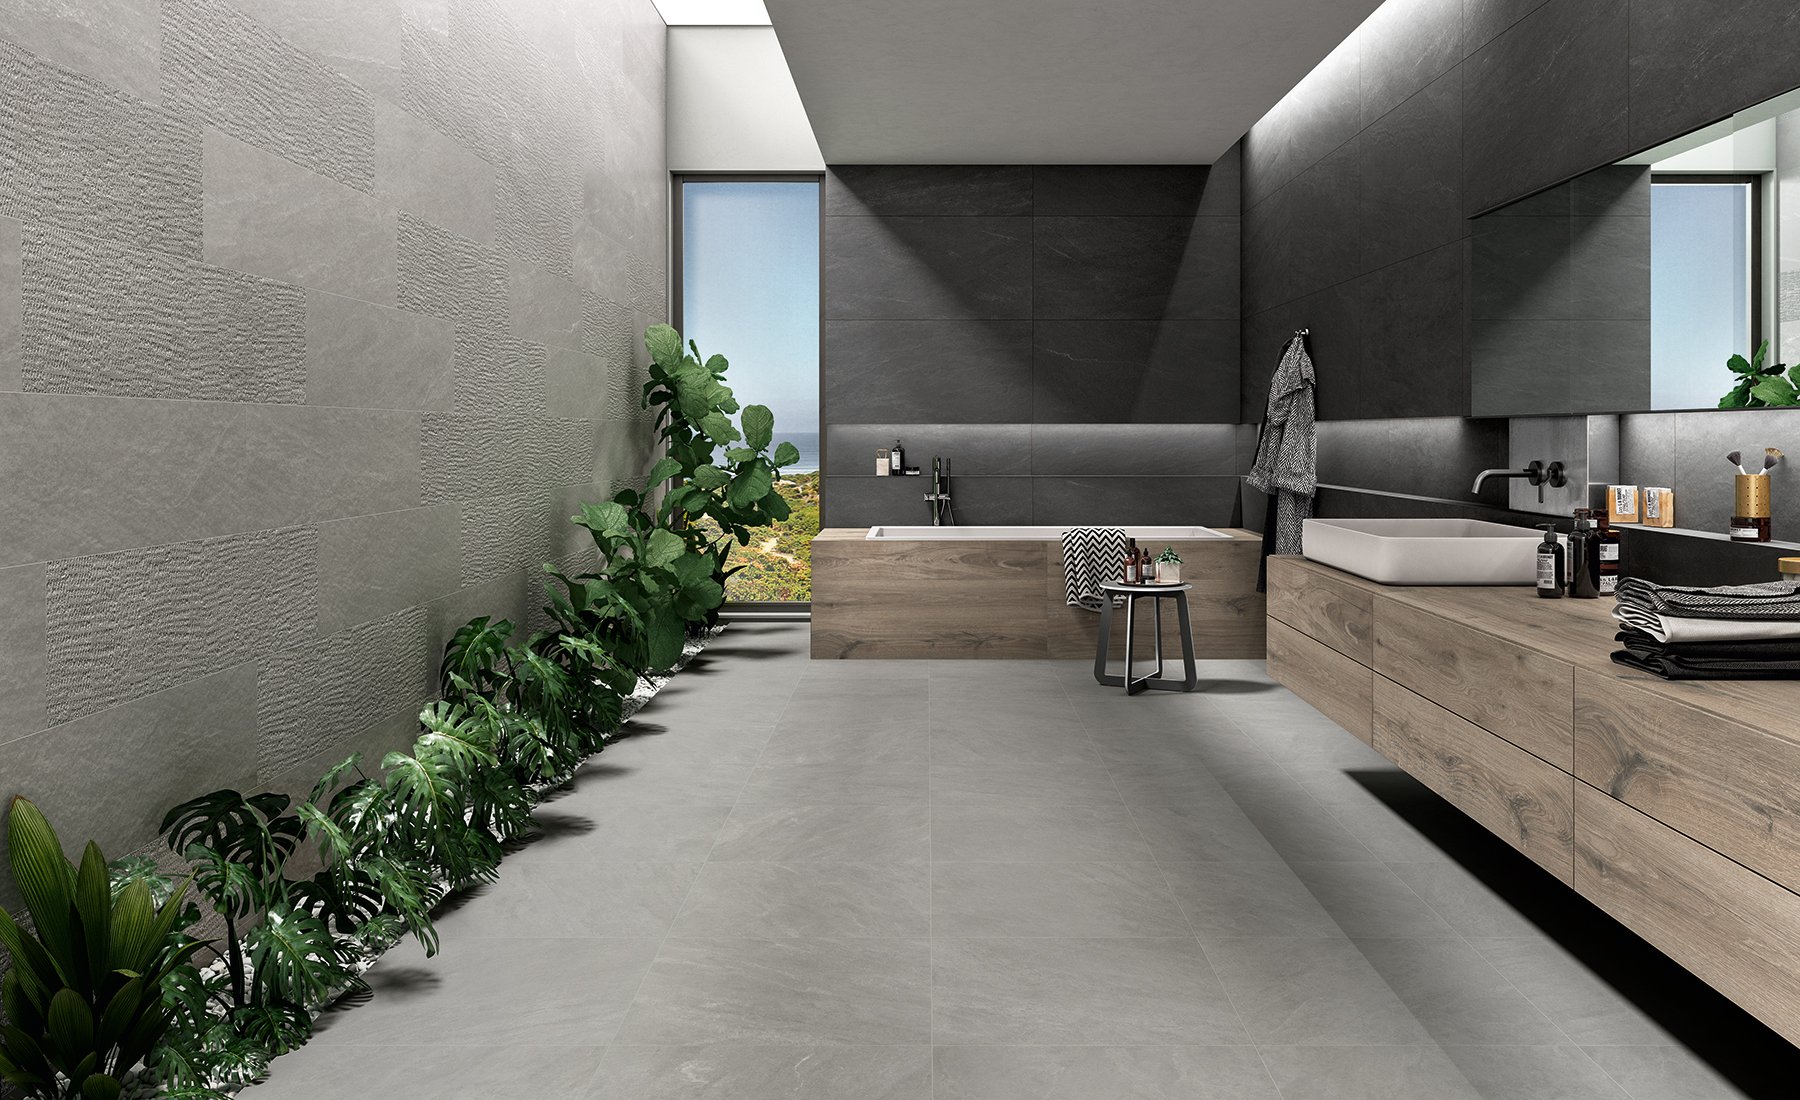 #NovaBell #Norgestone Light Grey #Obklady a dlažby #Koupelna #kámen #Moderní styl #šedá #Matná dlažba #1000 - 1500 Kč/m2 #500 - 700 Kč/m2 #700 - 1000 Kč/m2 #new